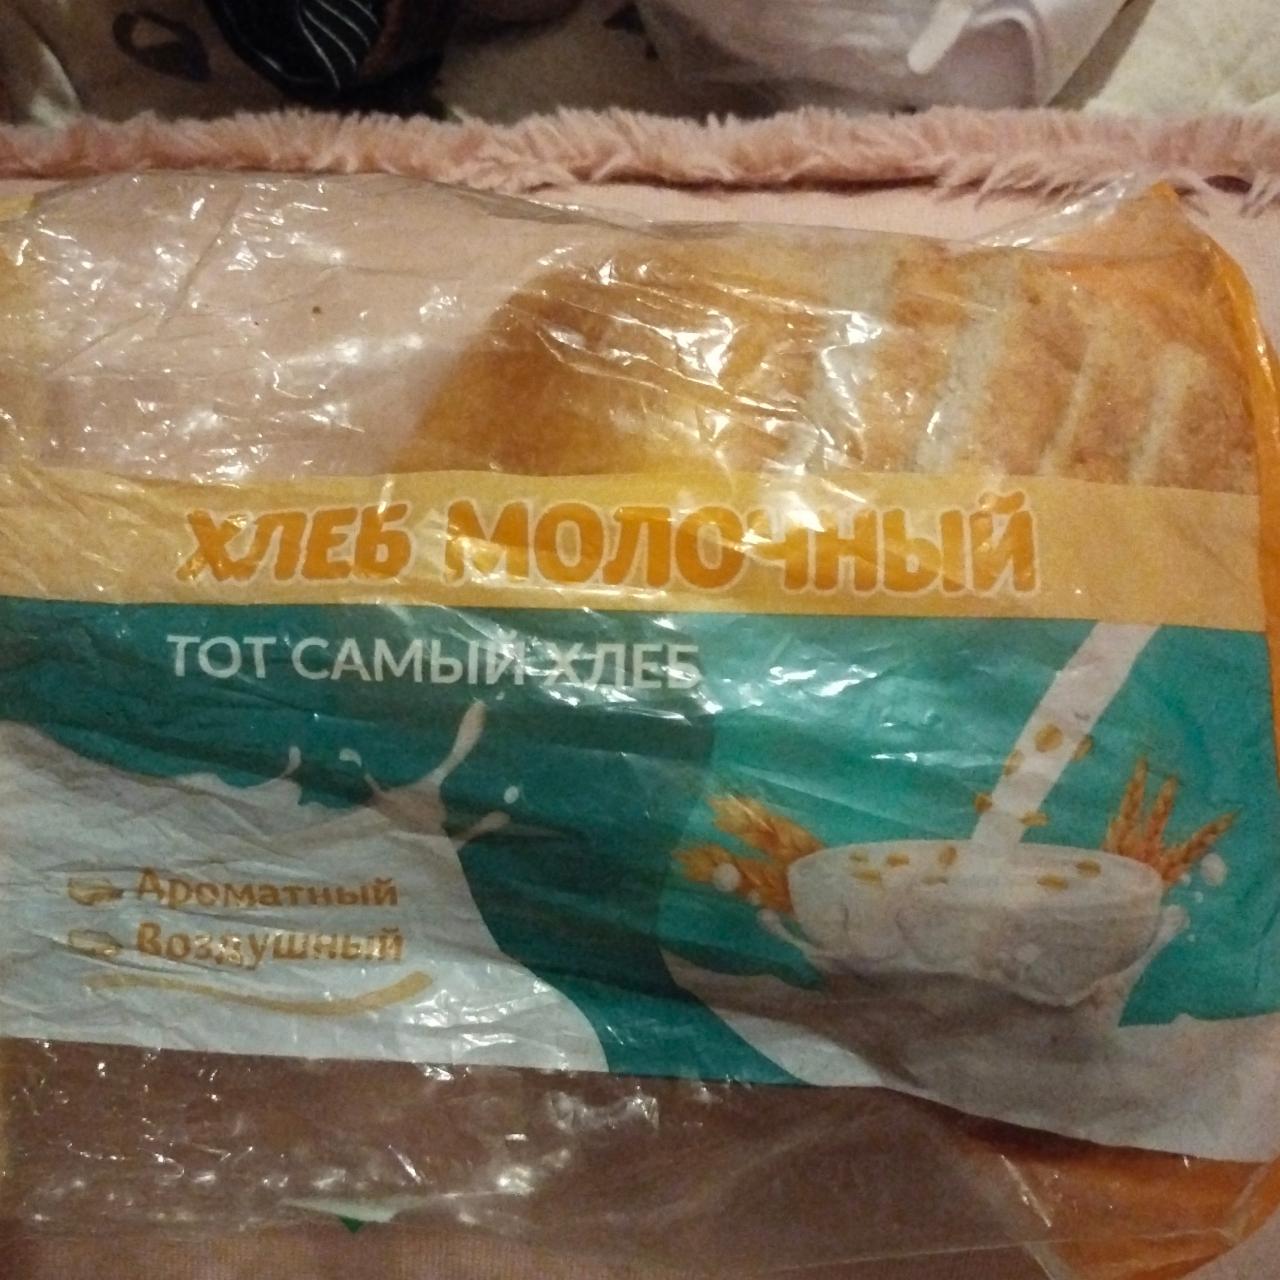 Фото - Хоеб молочный тот самый хлеб Калужский хлебокомбинат